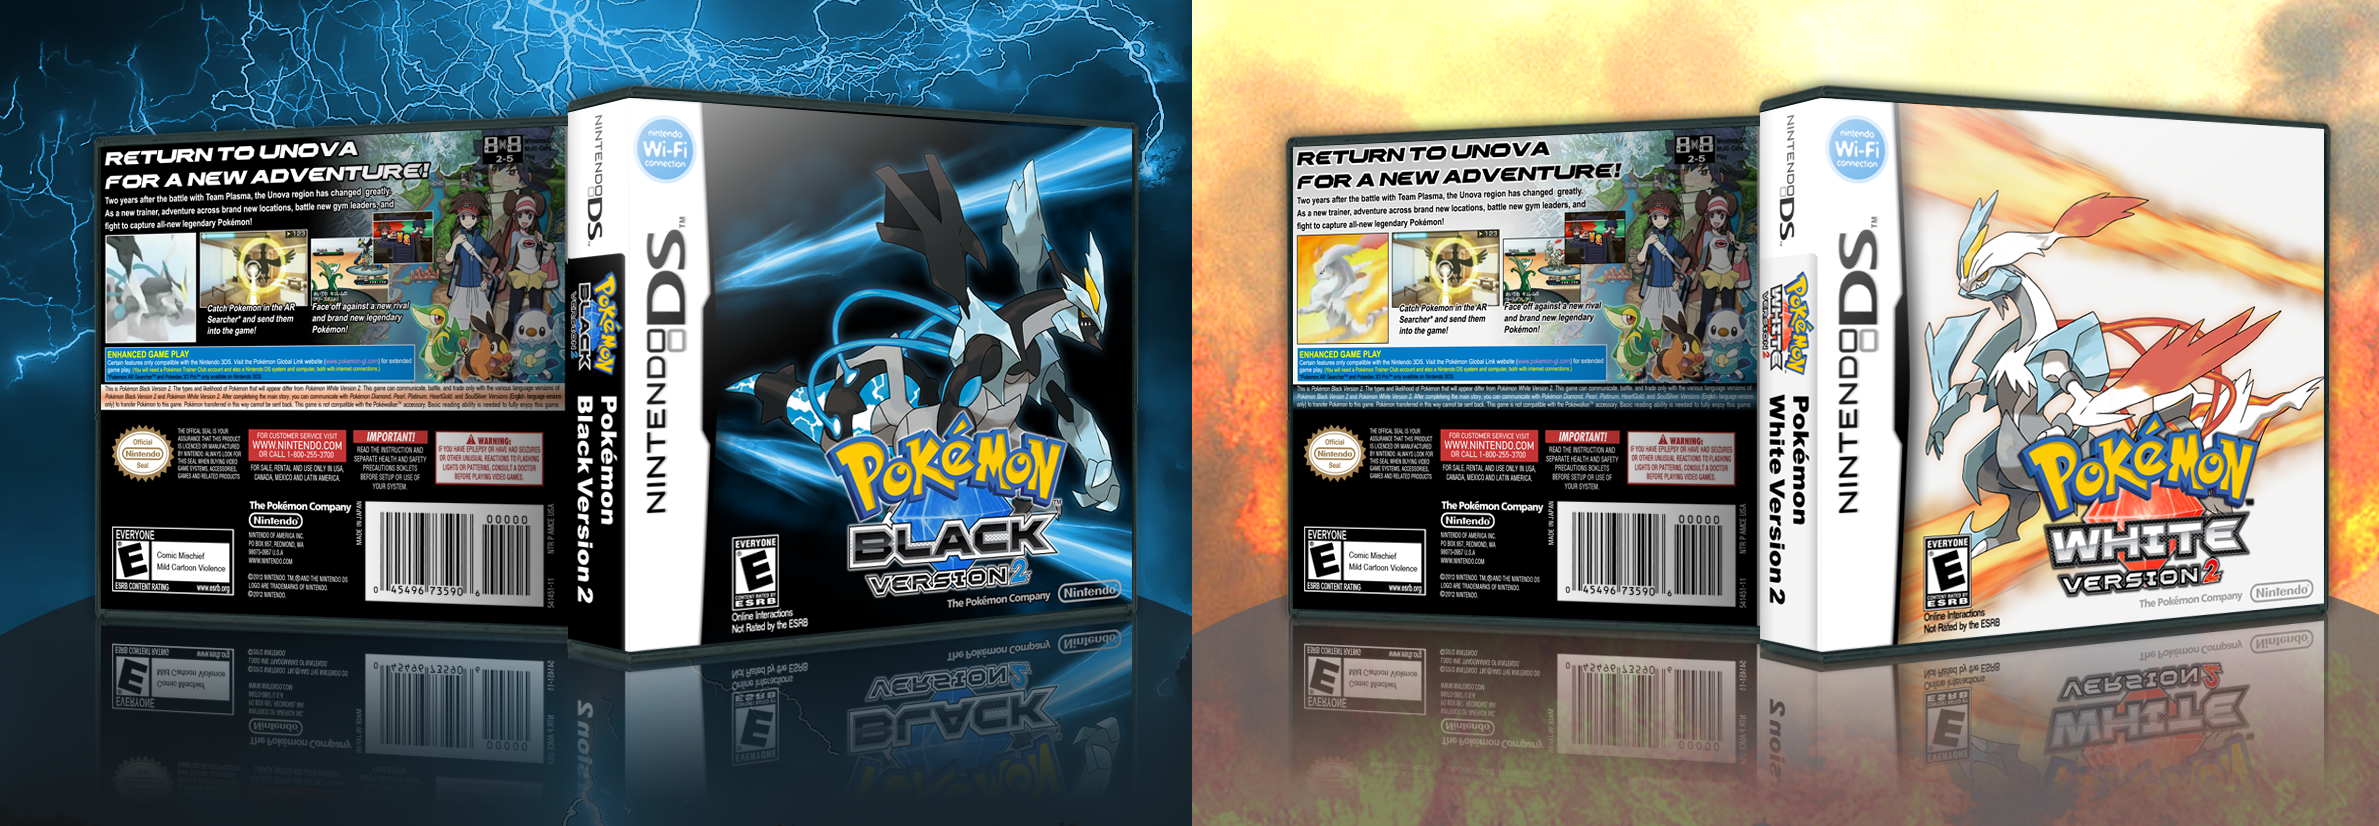 Pokemon Black and White Version 2 box cover